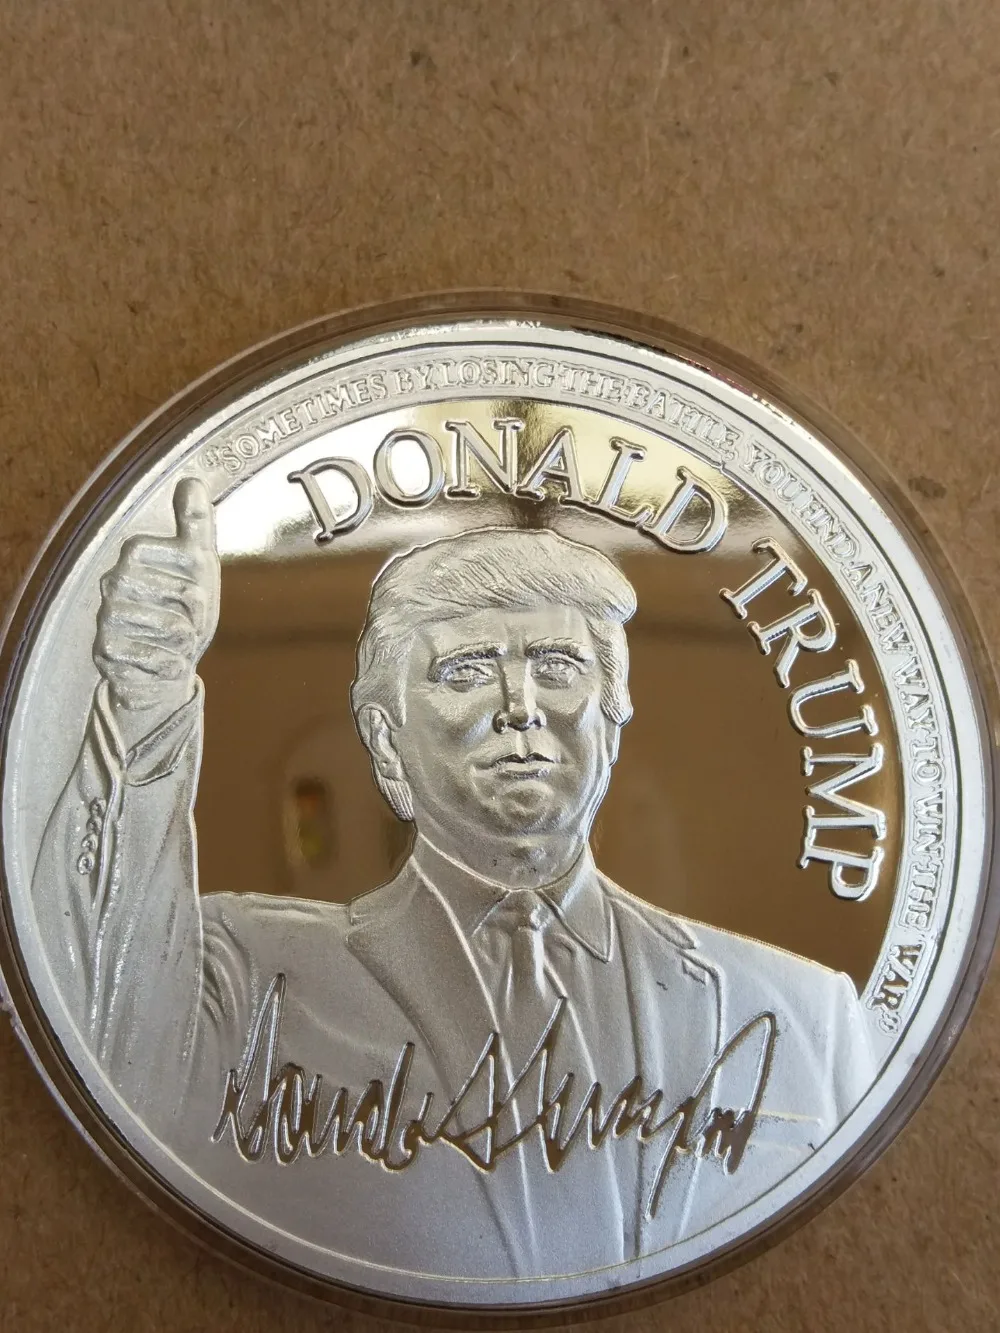 Посеребренная США Дональд монета с изображением Трампа